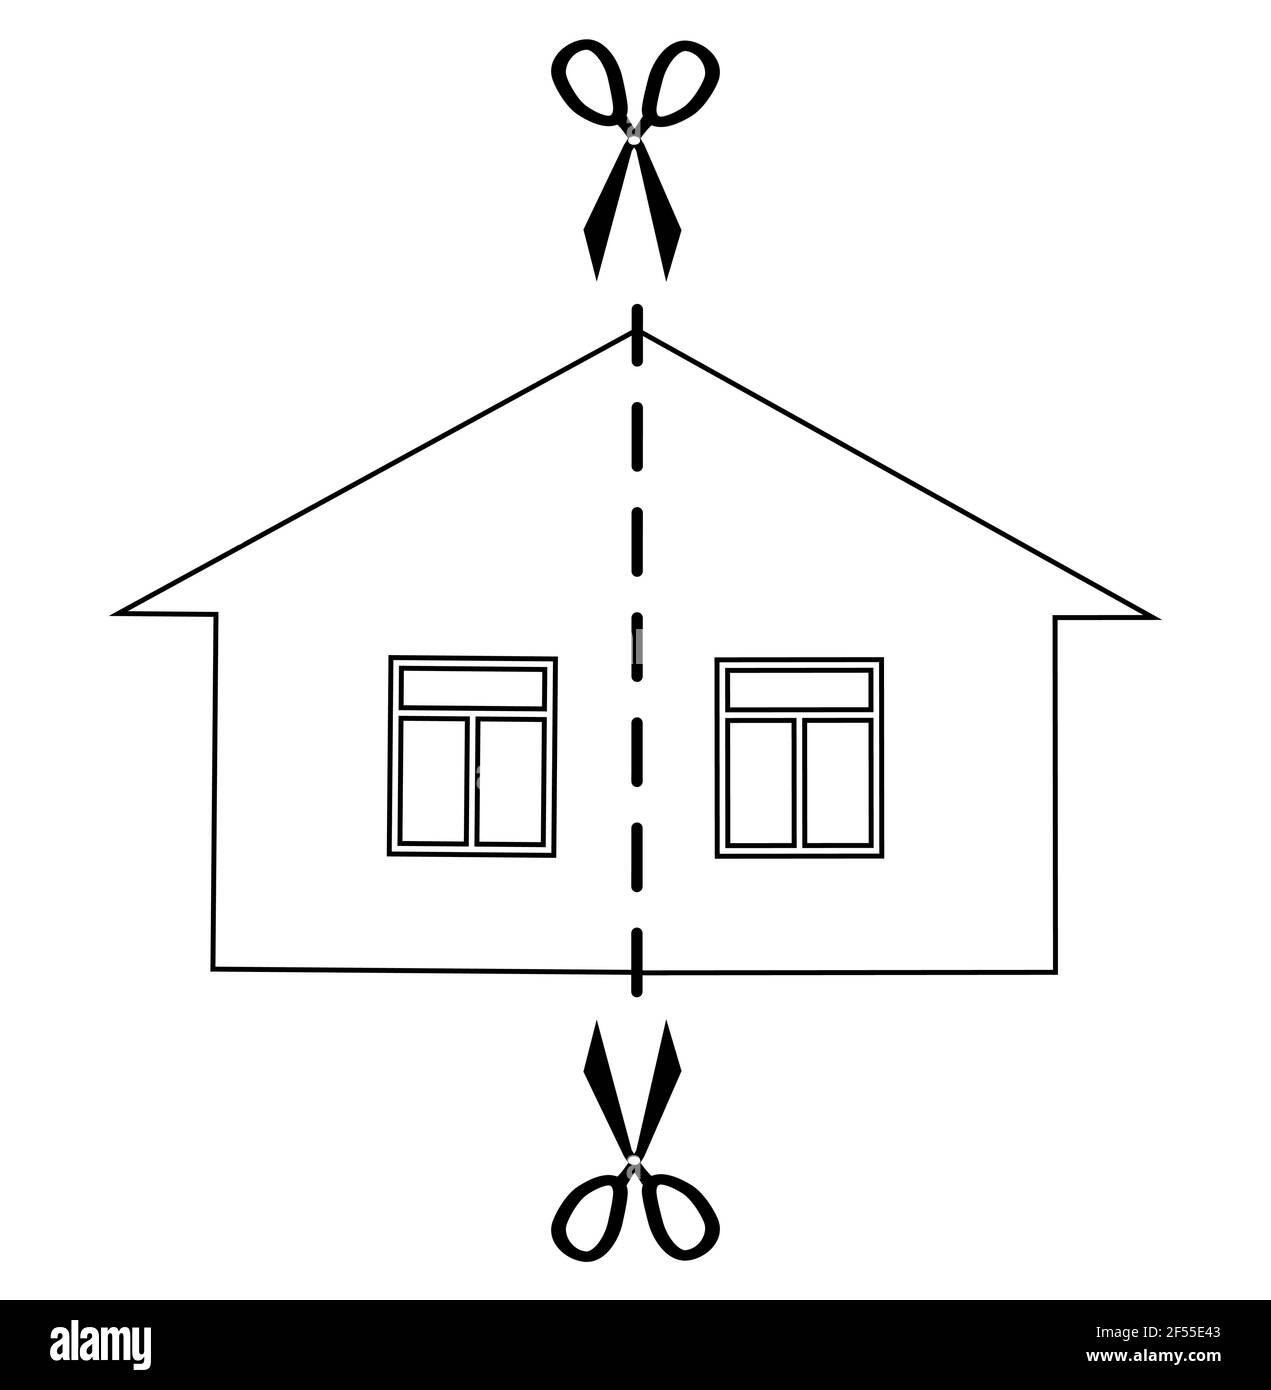 Konzept der Scheidung und Teilung des Eigentums. Schwarz monochrom Vektor Illustration Haus in zwei Hälften geschnitten. Stock Vektor